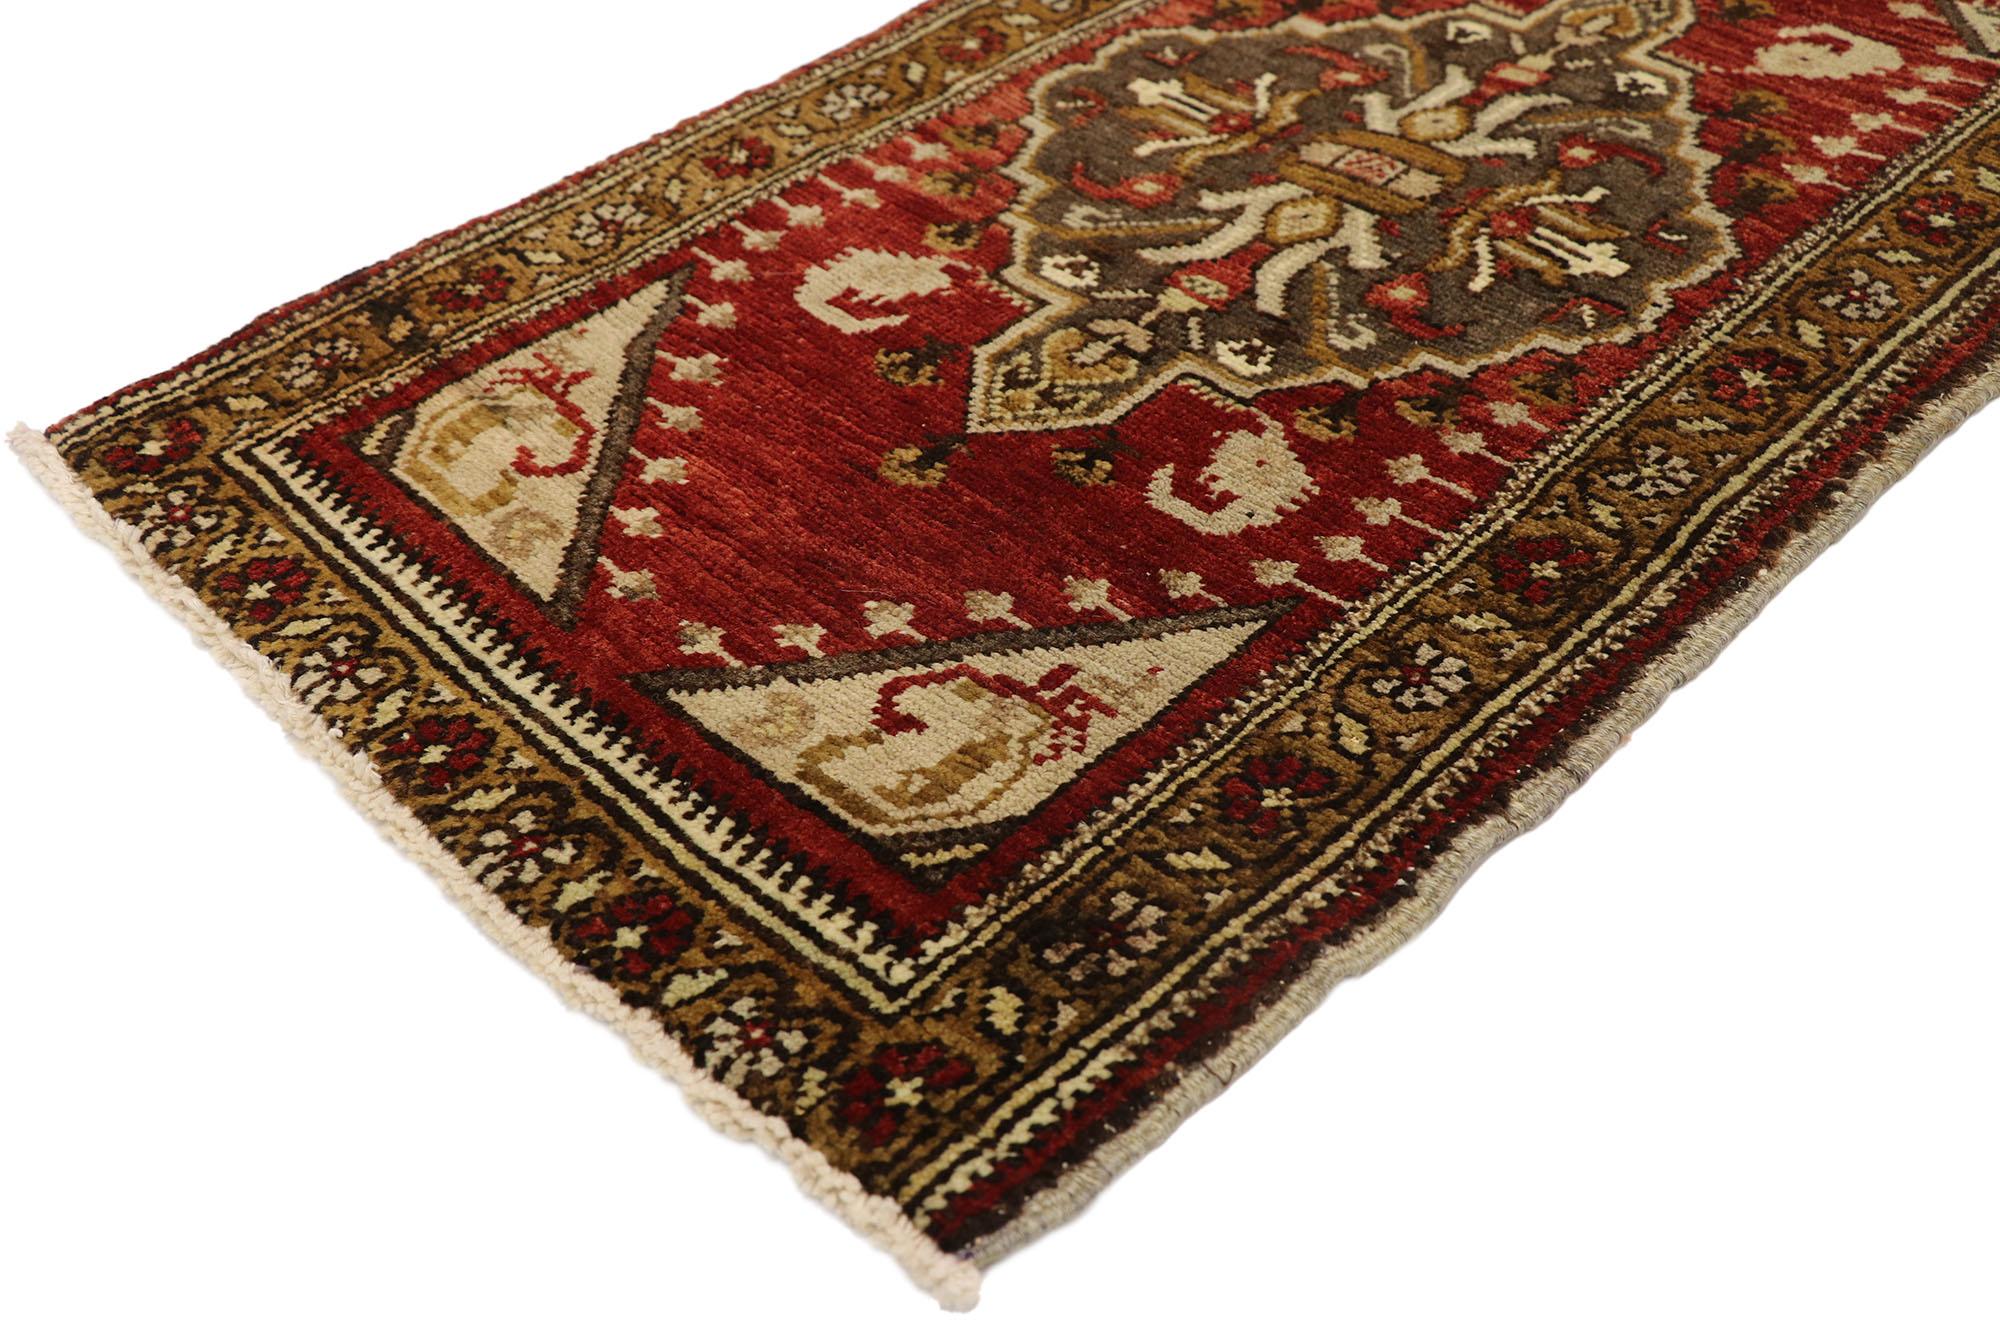 51263 Vintage Turkish Yastik Rug, 01'07 x 02'11. Turkish Yastik rugs, also known as 